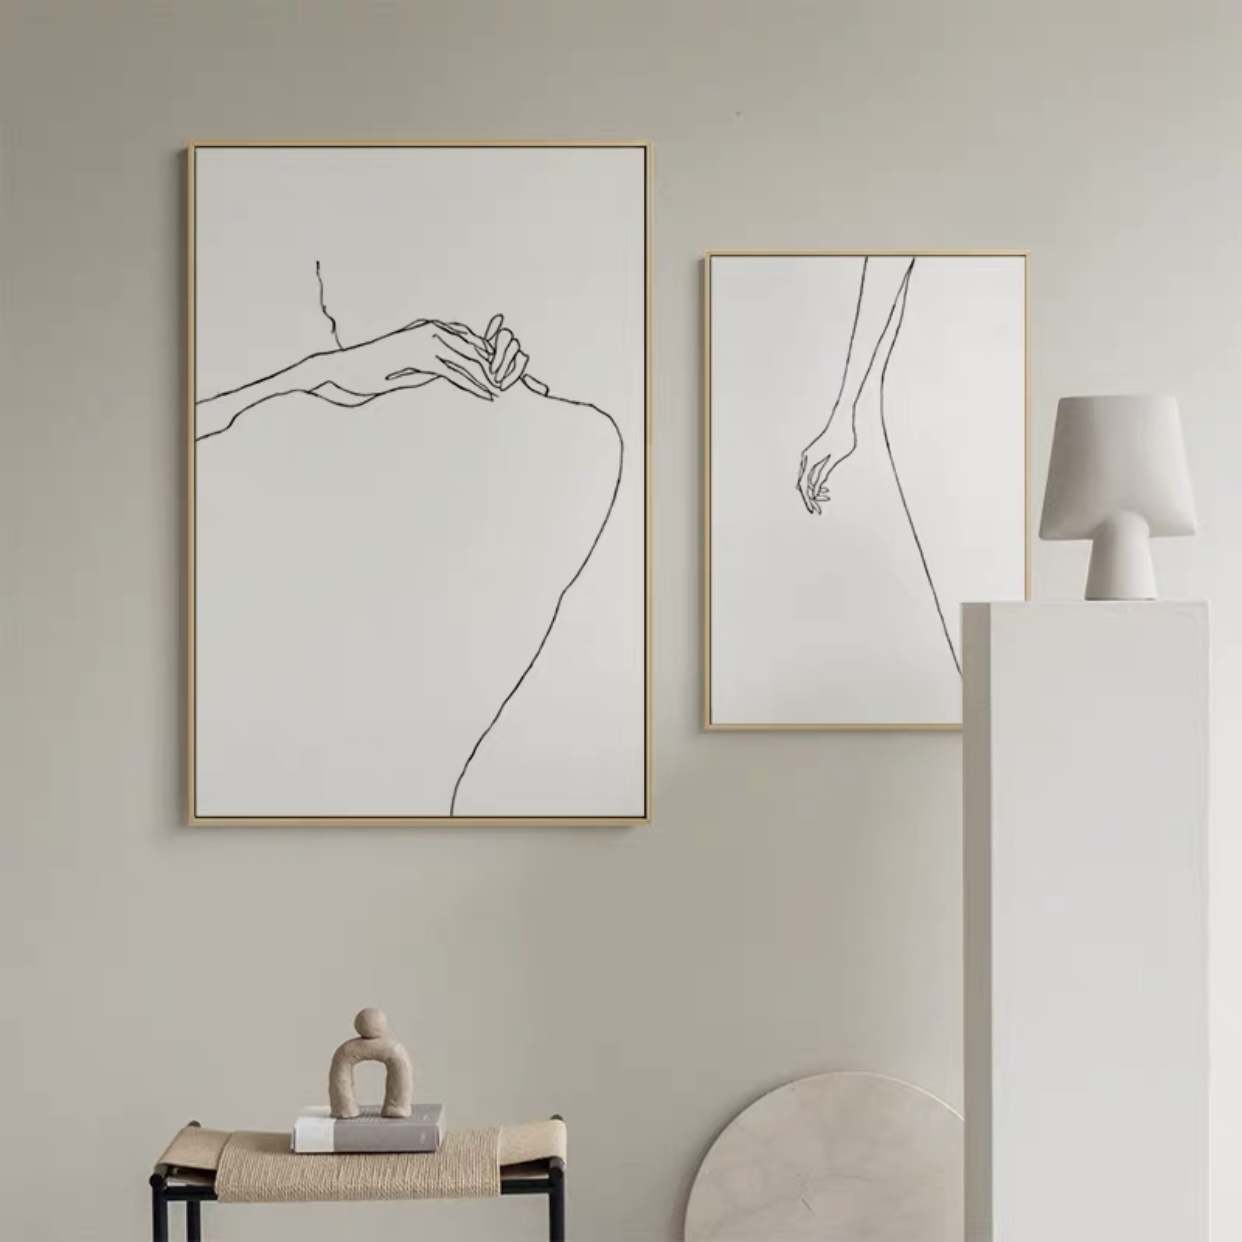 现代简约客厅沙发背景墙挂画人物线条创意壁画北欧风格抽象装饰画